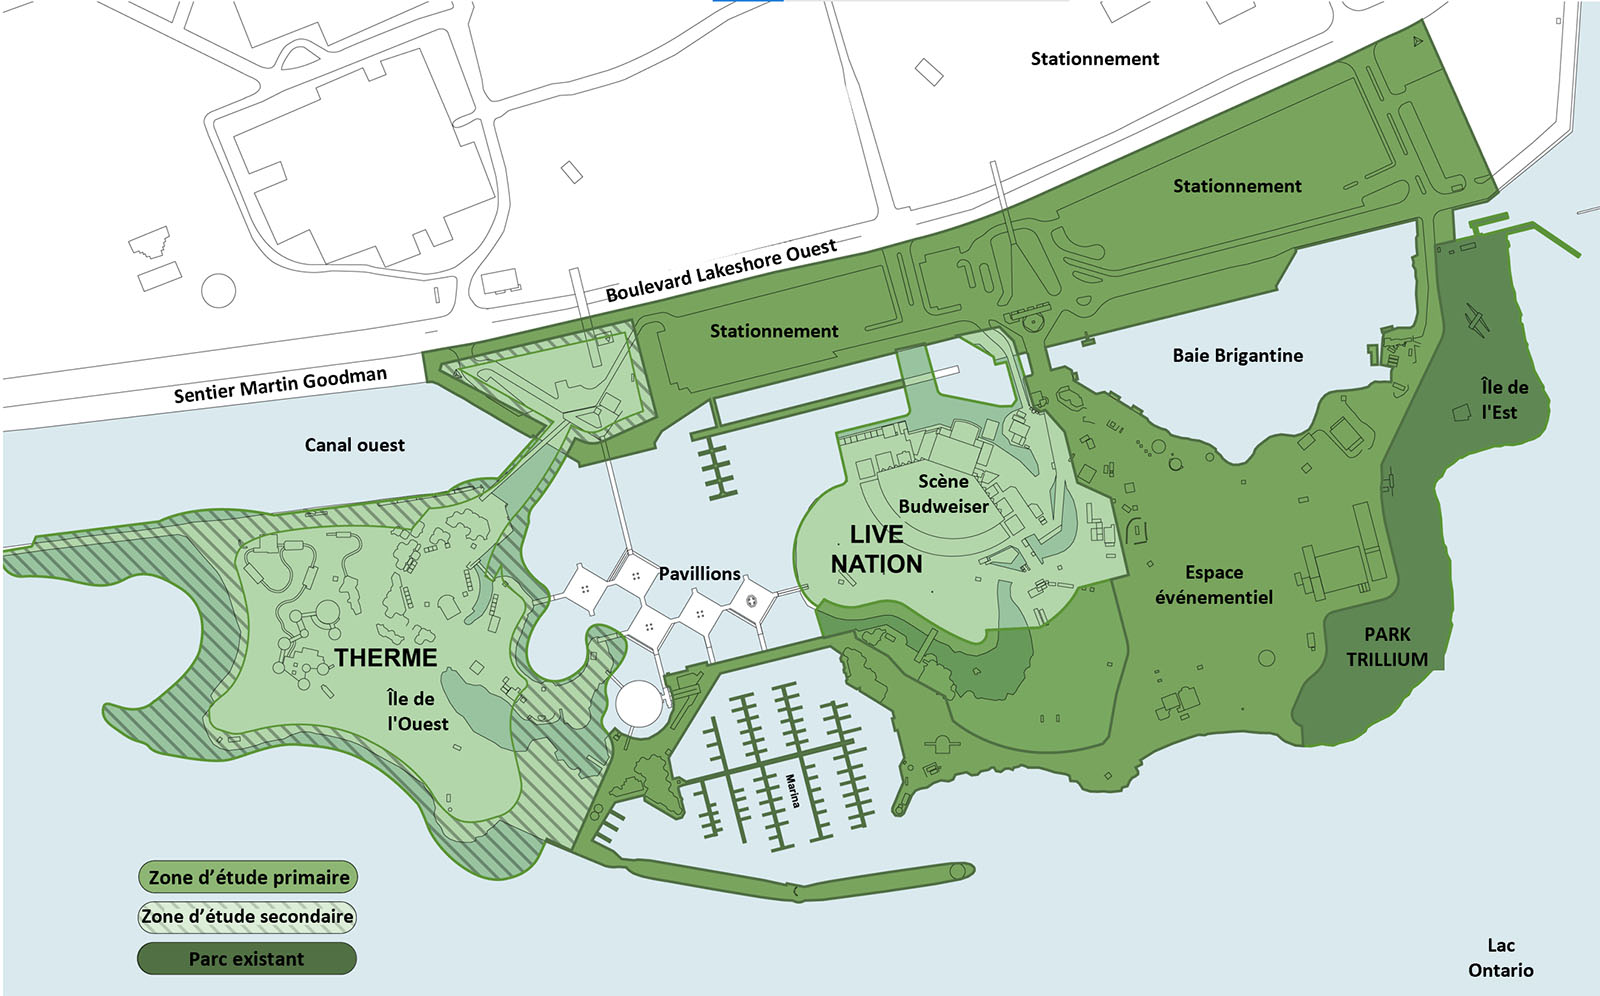 Carte du site de la Place de l’Ontario montrant le parc Trillium comme parc existant, la majeure partie de la partie continentale et de l’île est et la marina comme zone d’étude primaire, et le périmètre du secteur de Therme le long de l’eau comme zone d’étude secondaire. 